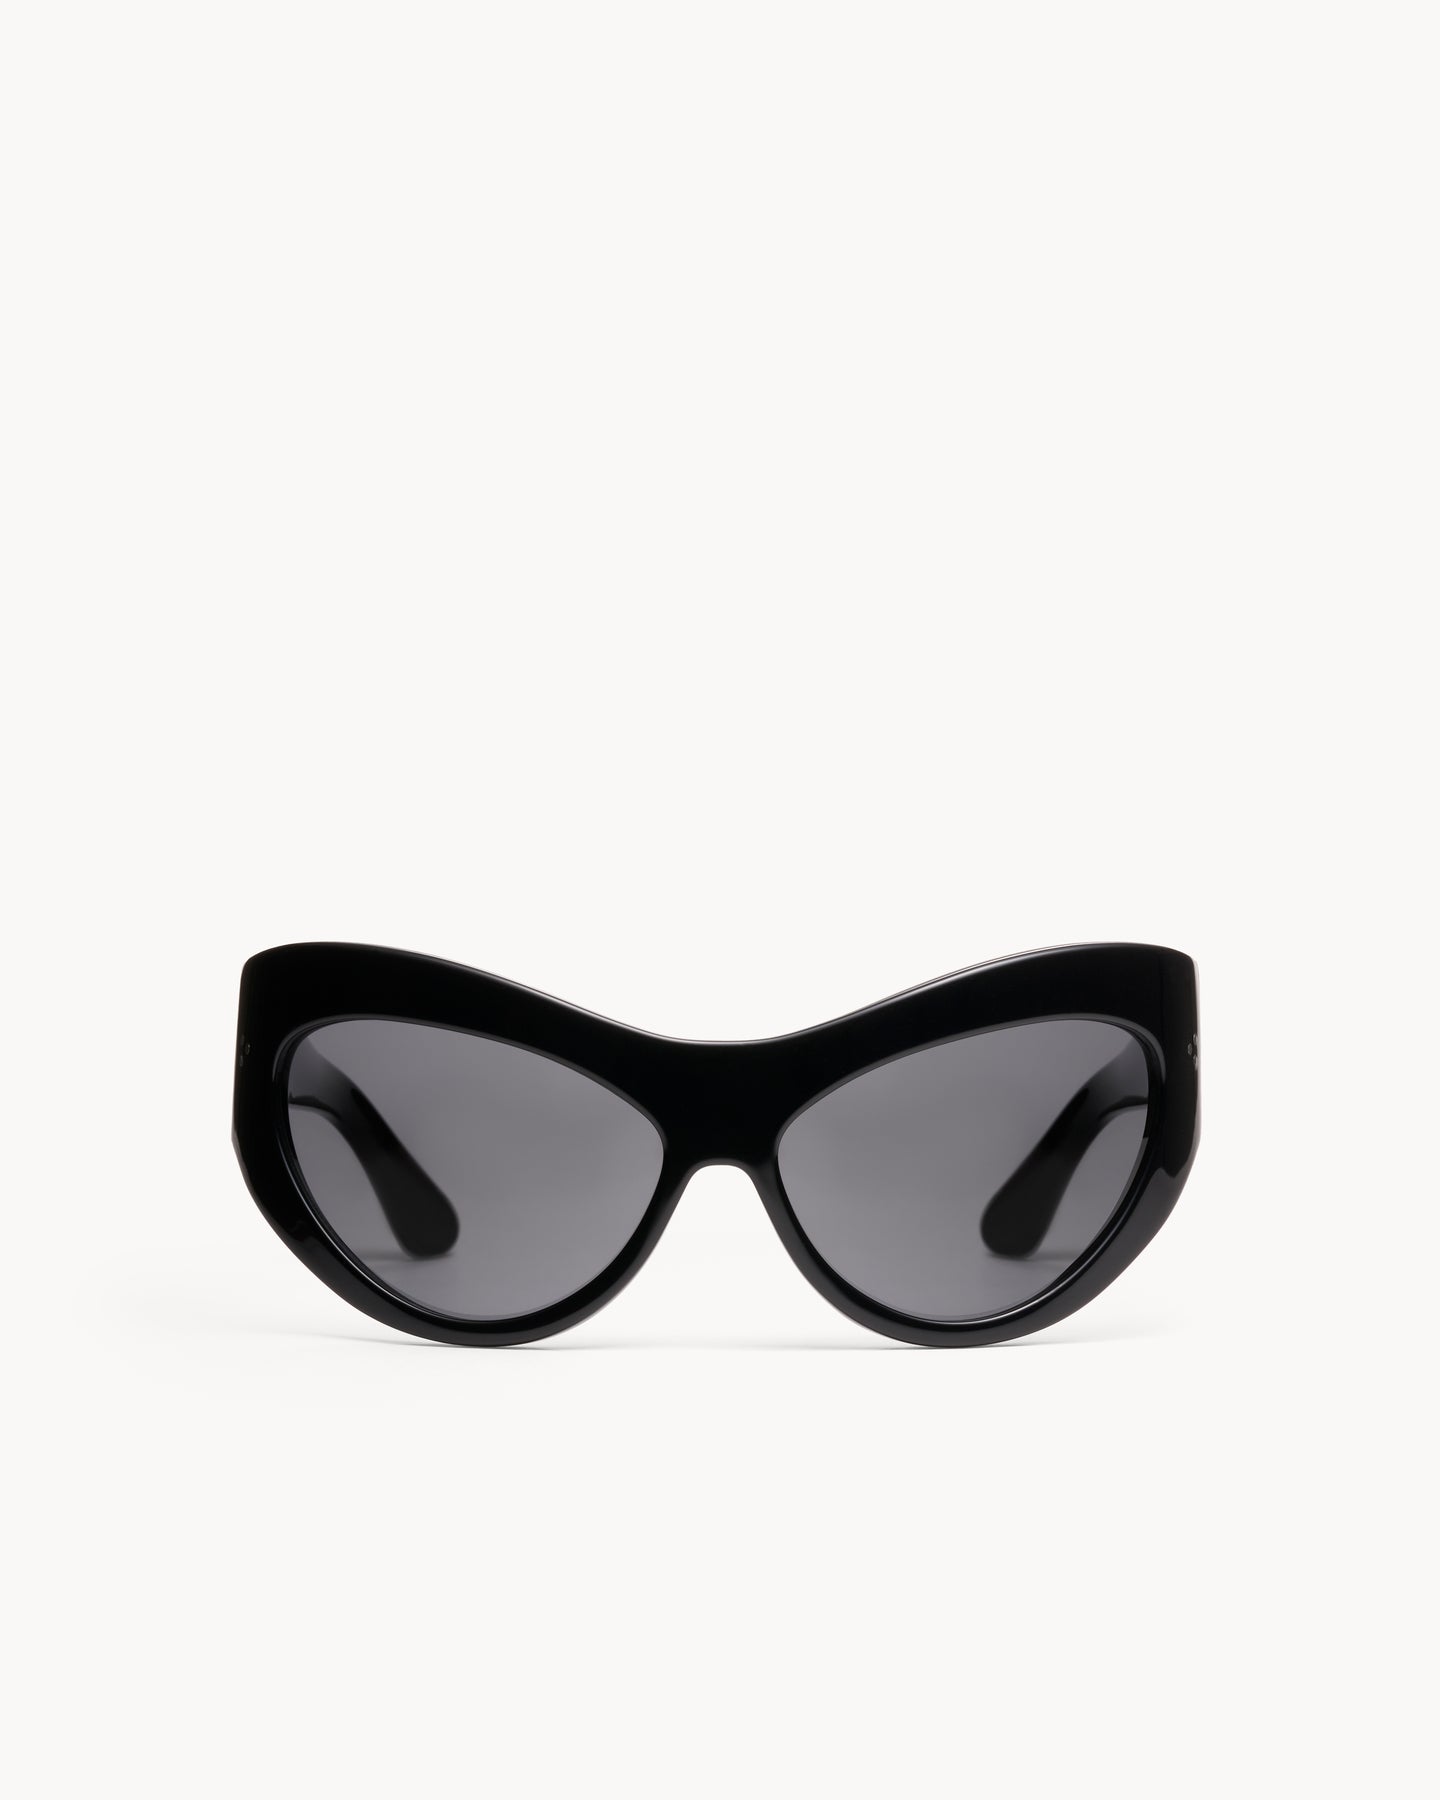 Port Tanger Darya Sunglasses in Black Acetate and Black Lenses 1